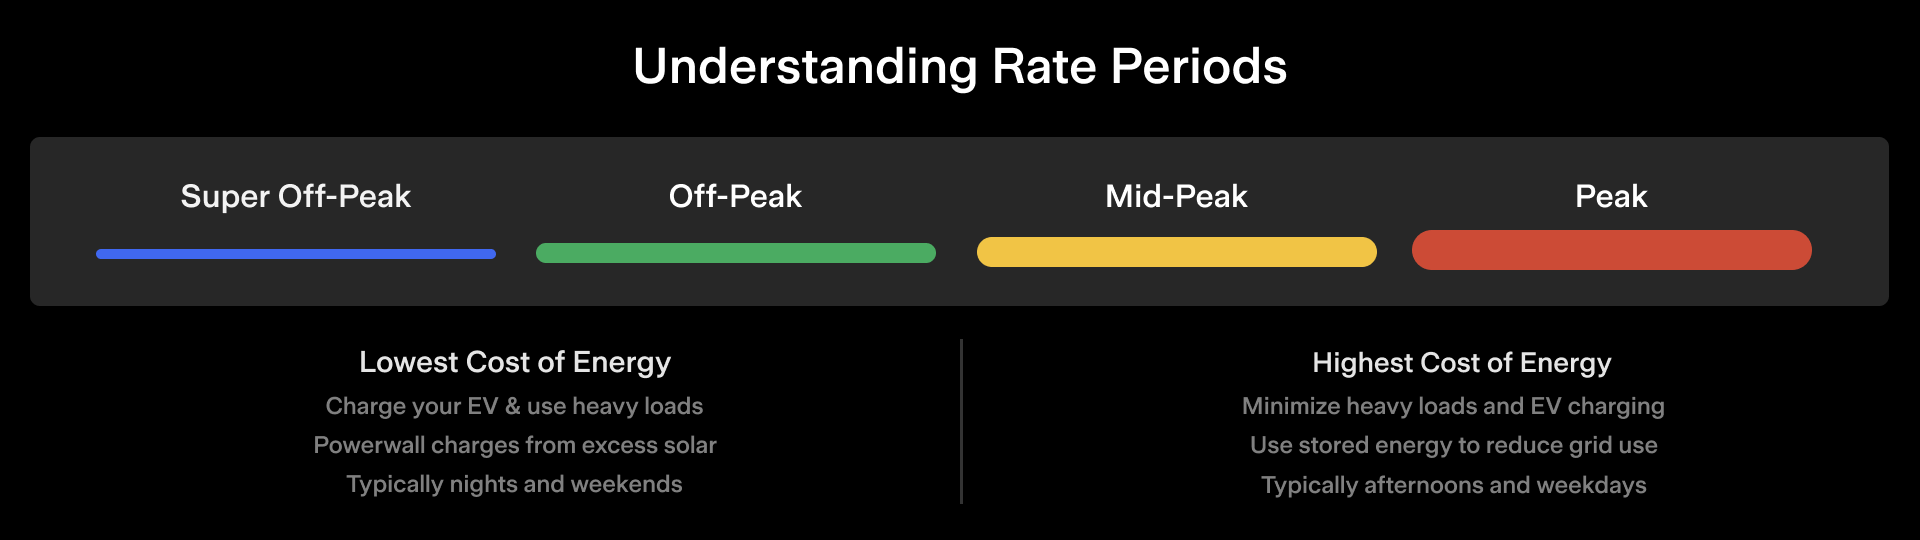 Understanding rate periods